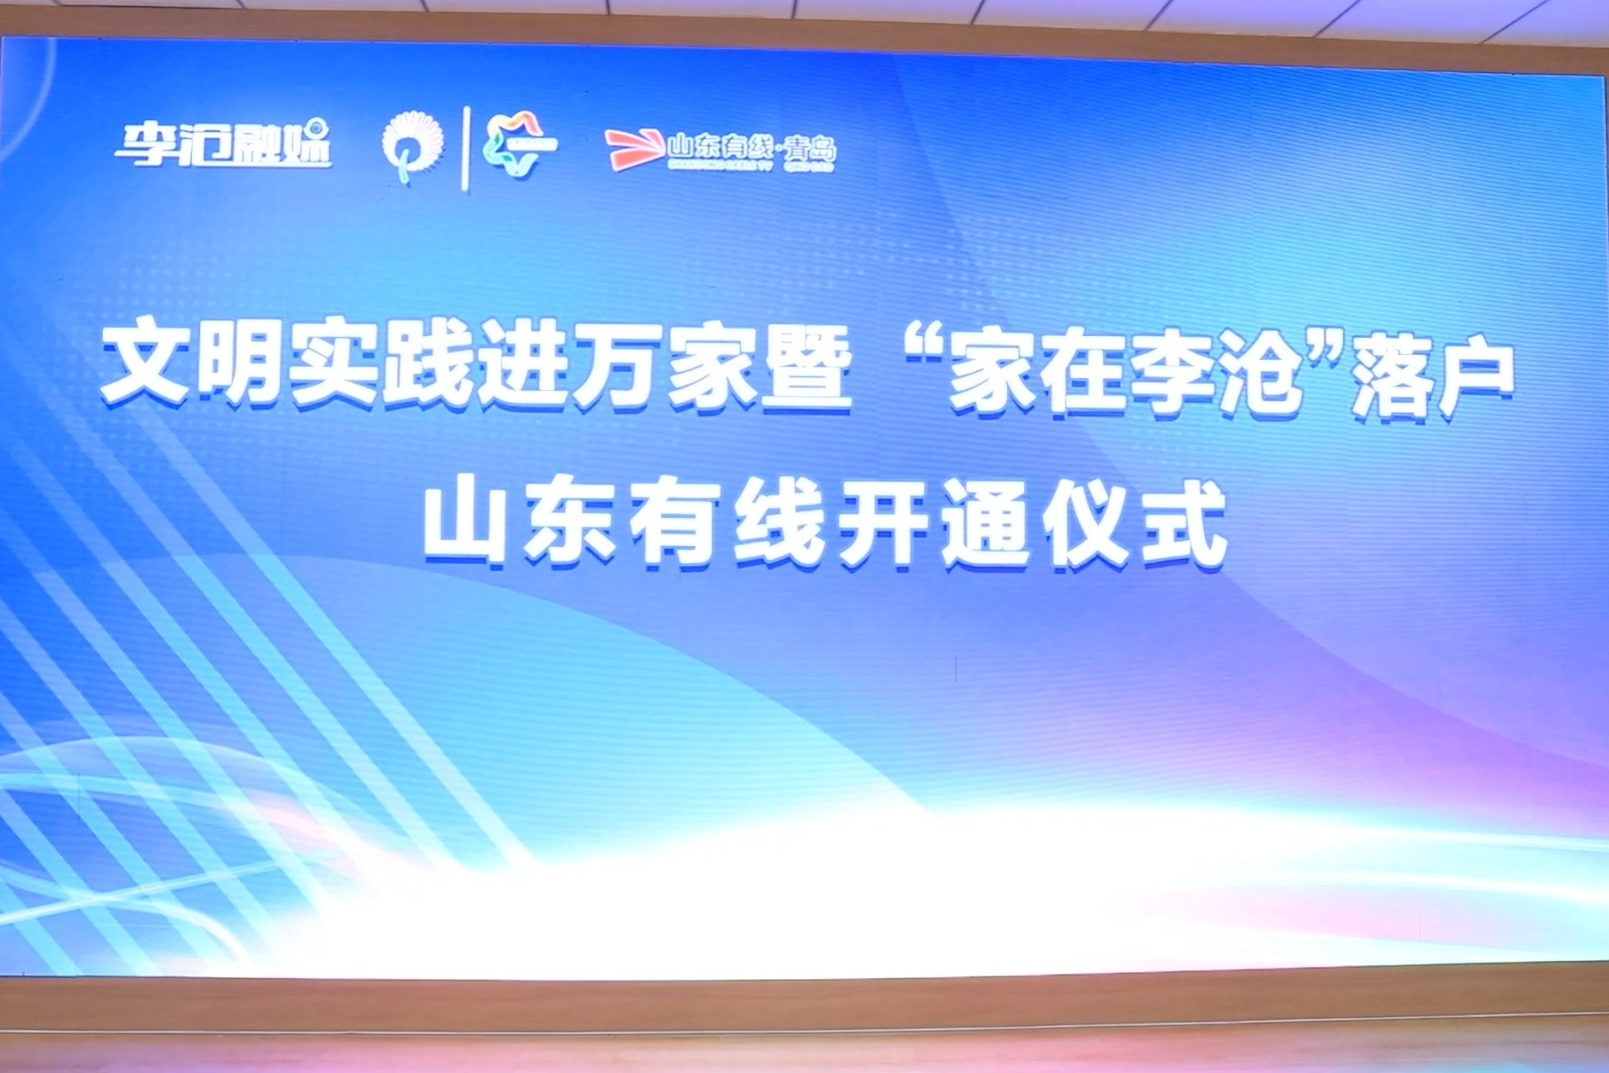 家在李沧电视宣传平台正式上线 全省首个线上新时代文明实践点建立